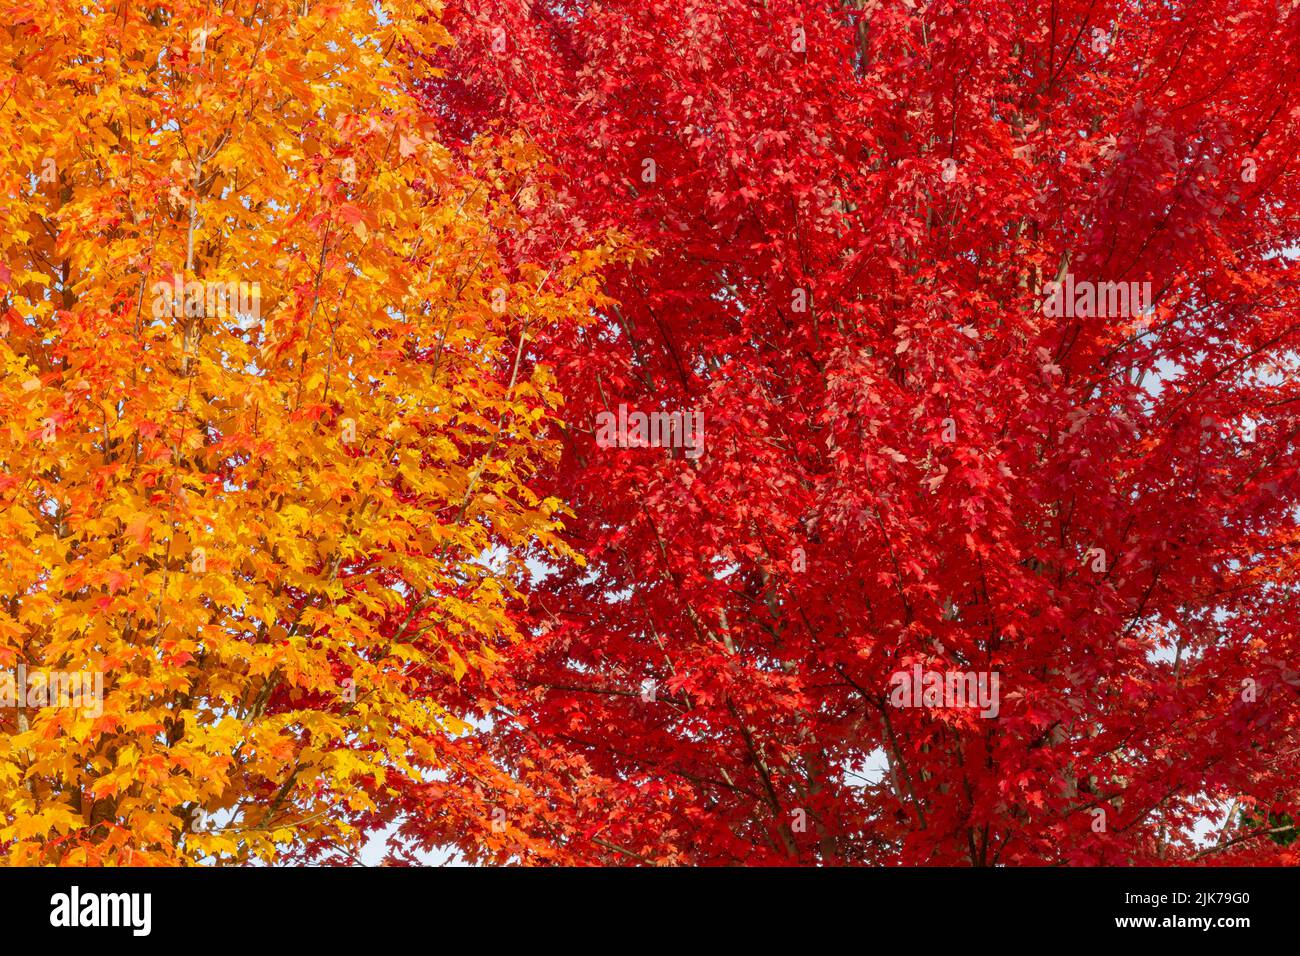 WA21826-00...WASHINGTON - feuilles colorées à l'automne bordant les trottoirs à Woodinville, Washington. Banque D'Images